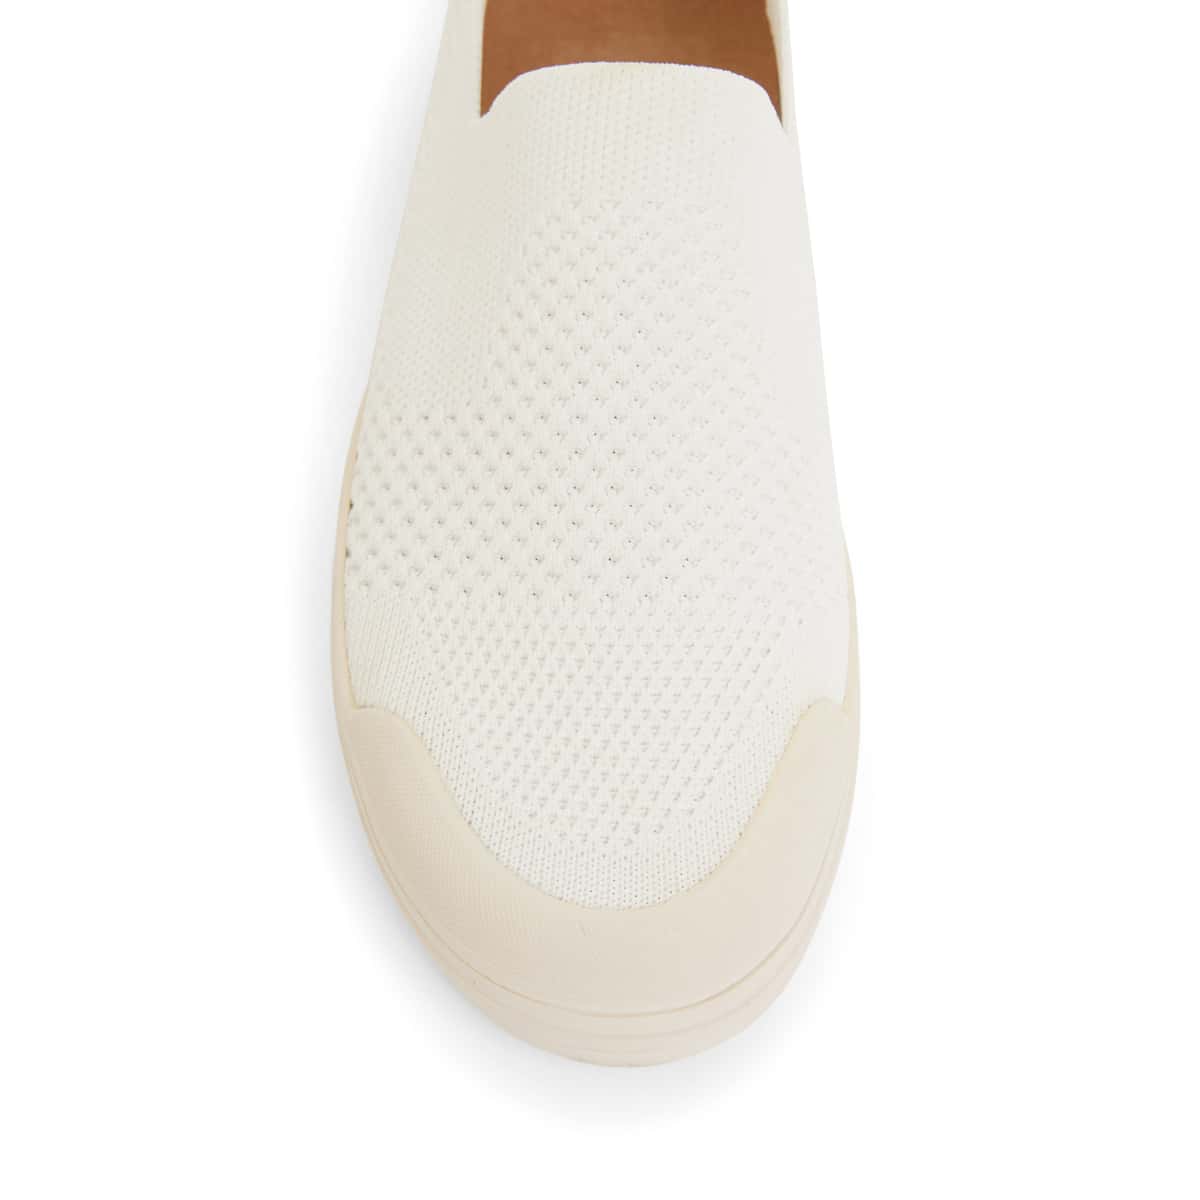 Veneto Sneaker in White Fabric